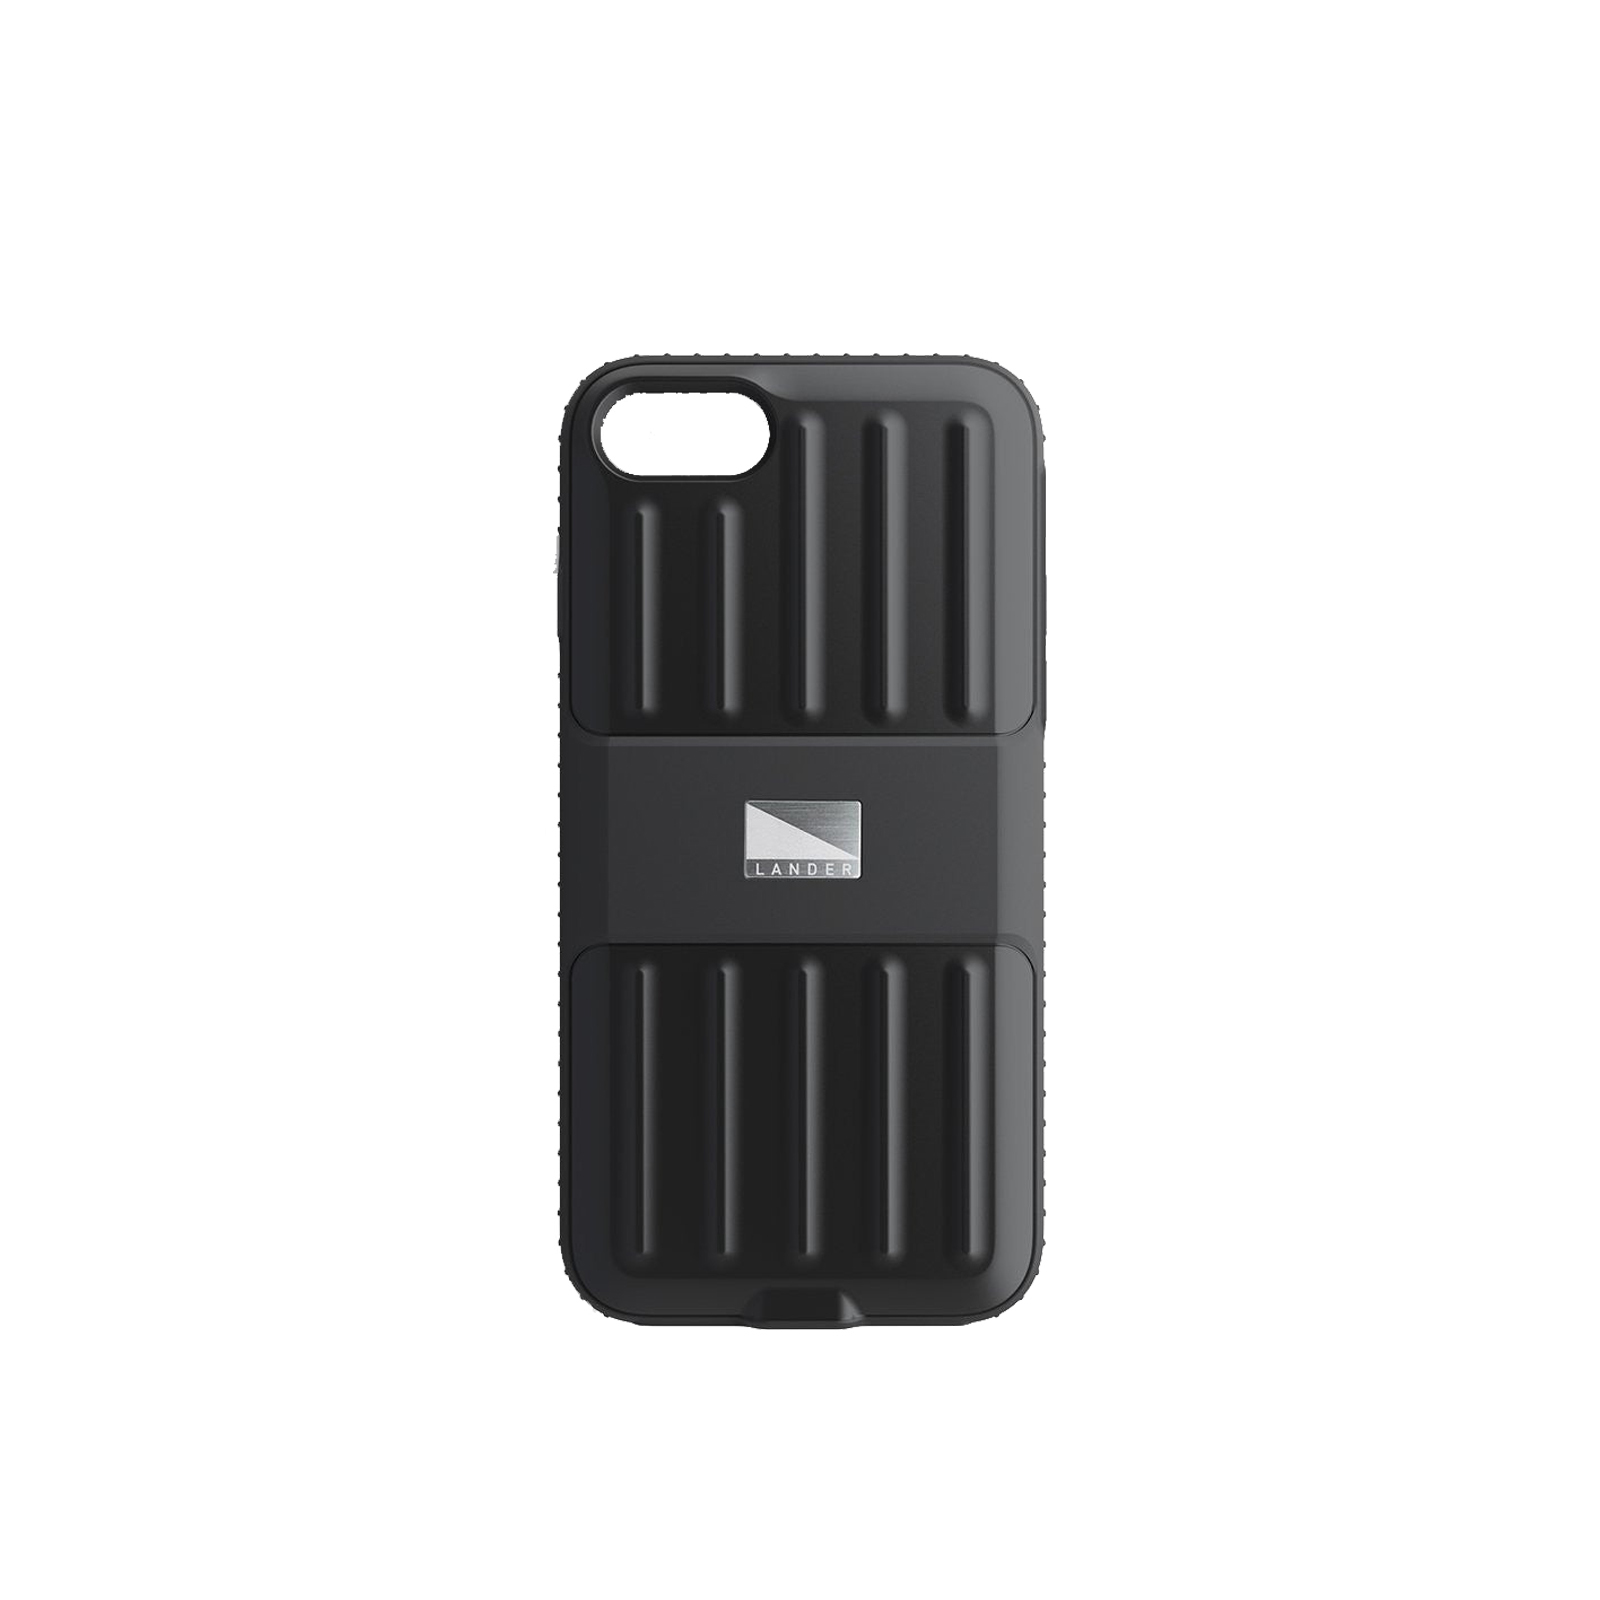 Powell iPhone 7 Plus / 8 Plus Case [Black]